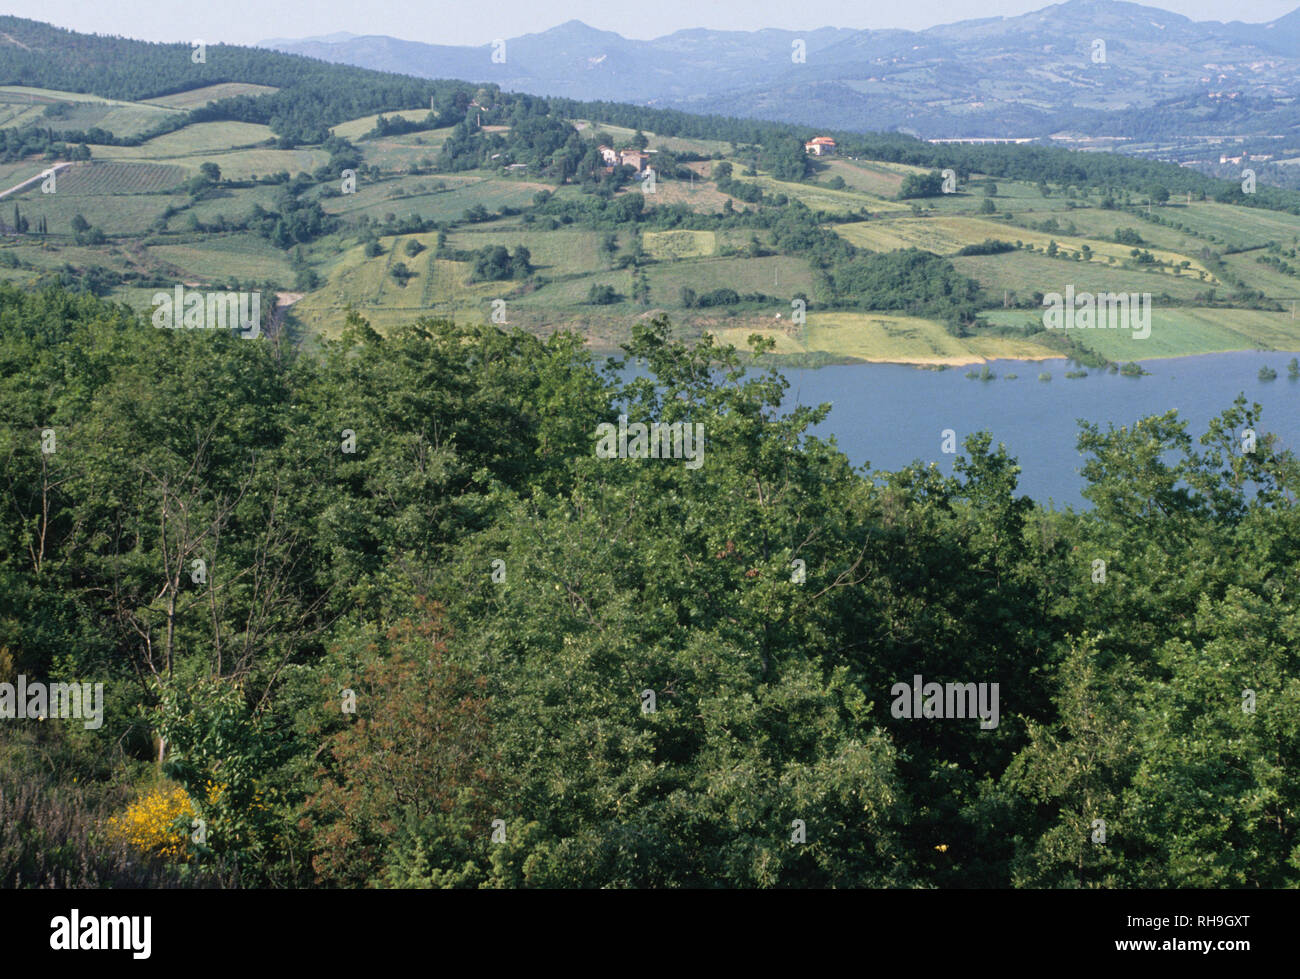 valtiberina, tevere river near san sepolcro, arezzo province, toscana (tuscany), italy Stock Photo